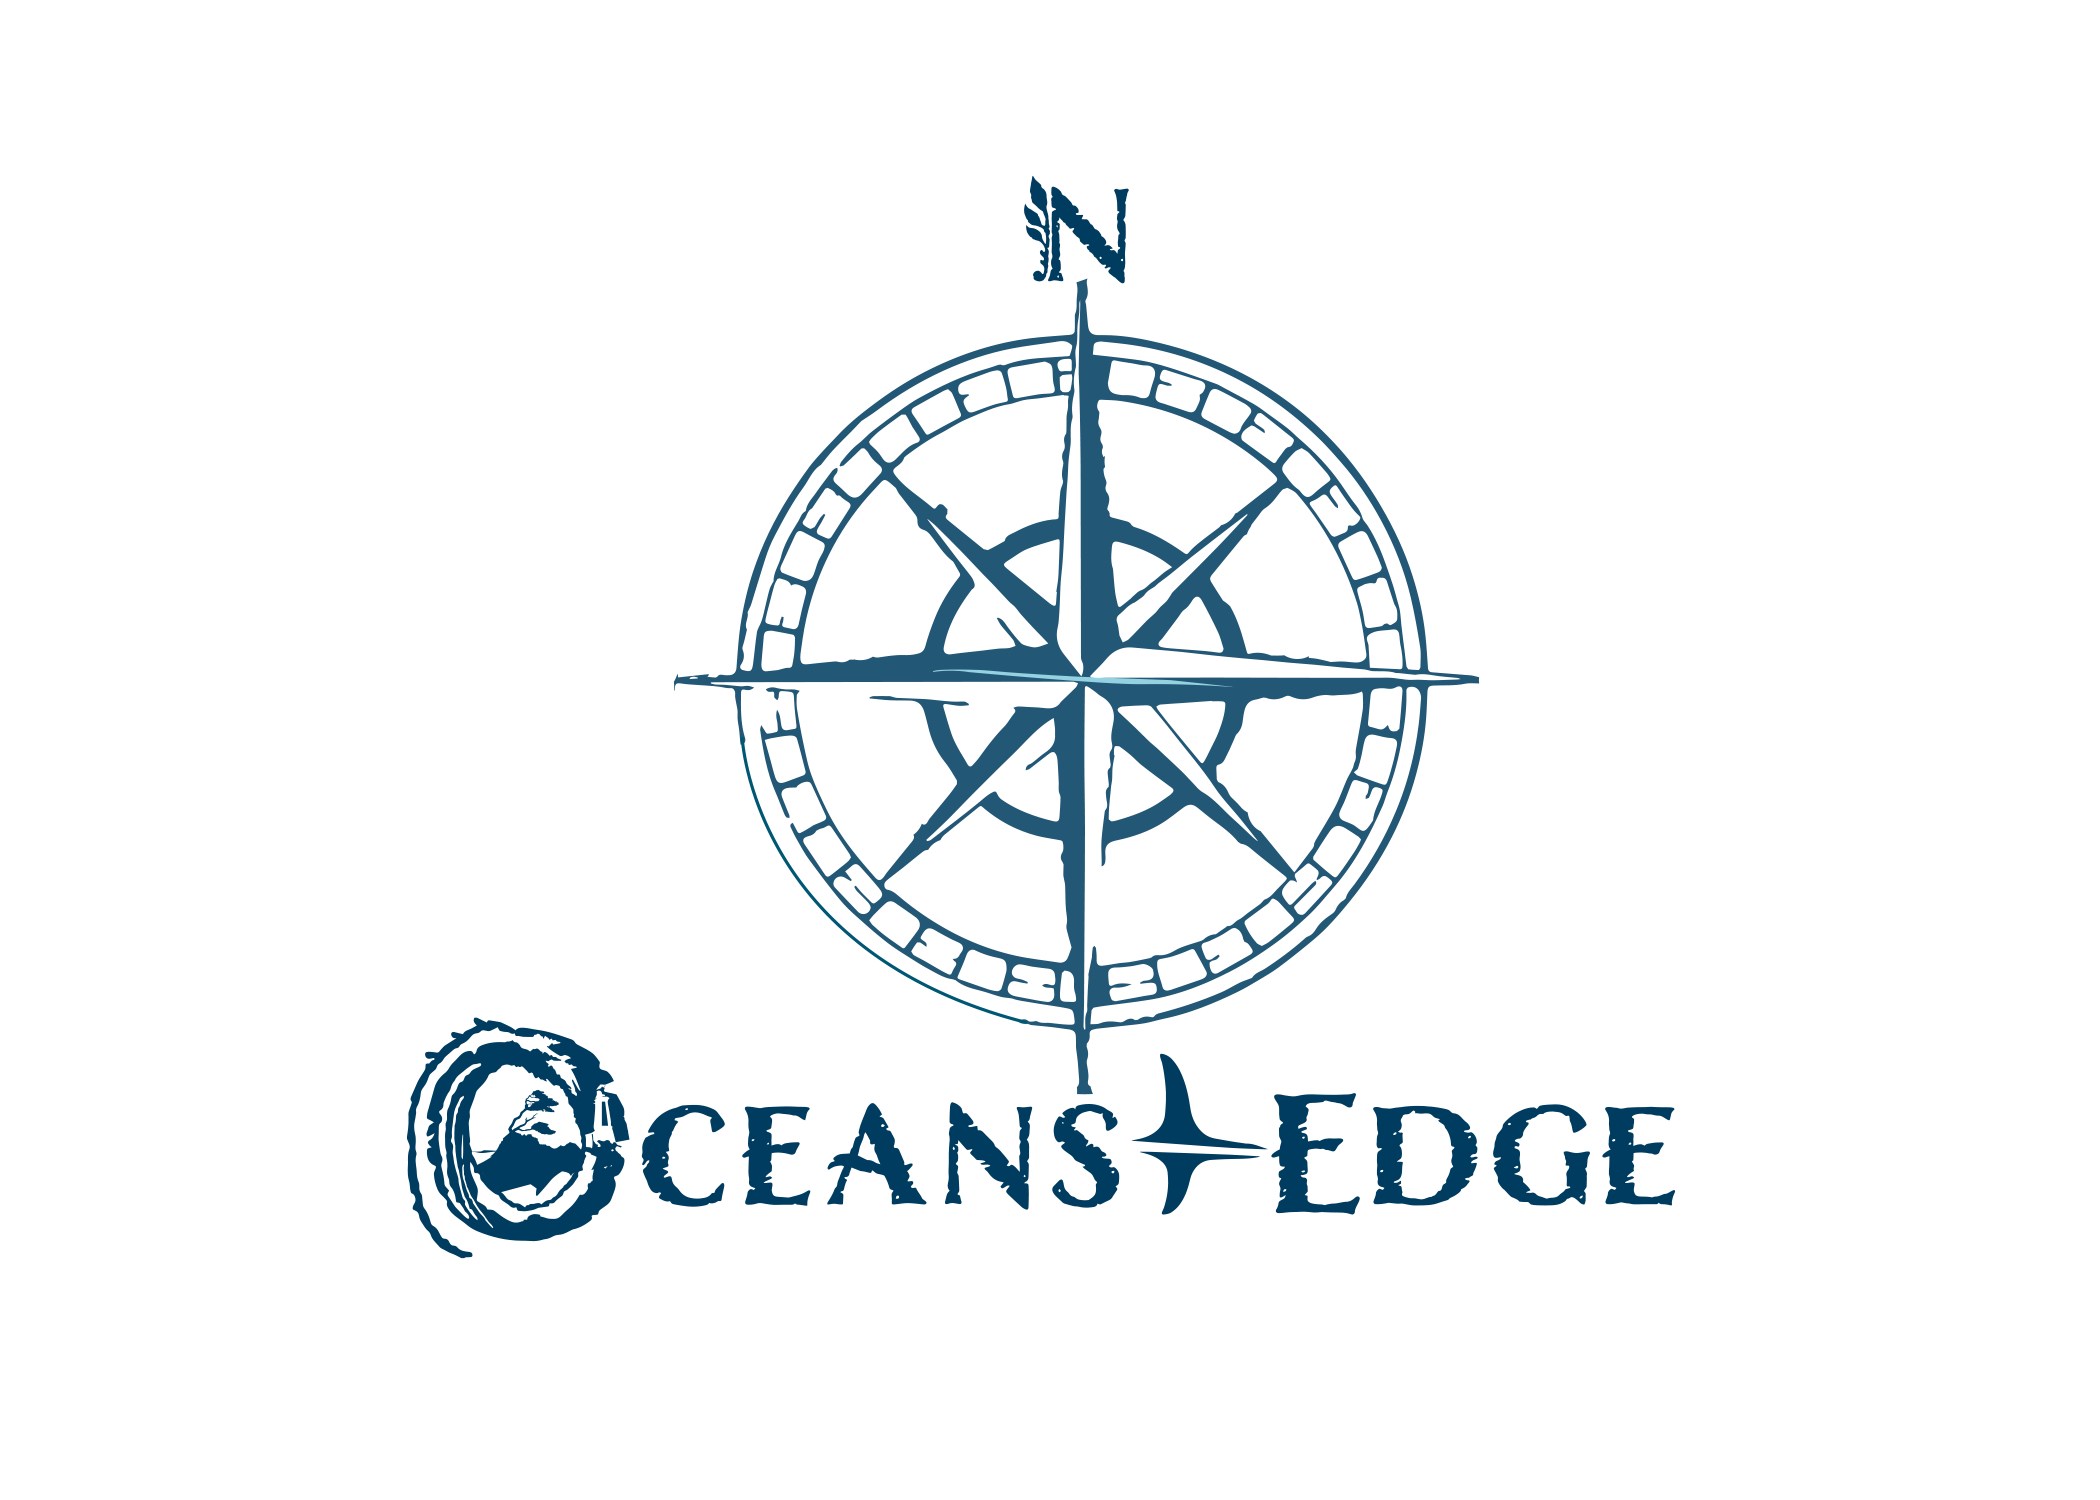 Ocean's Edge Art and Design